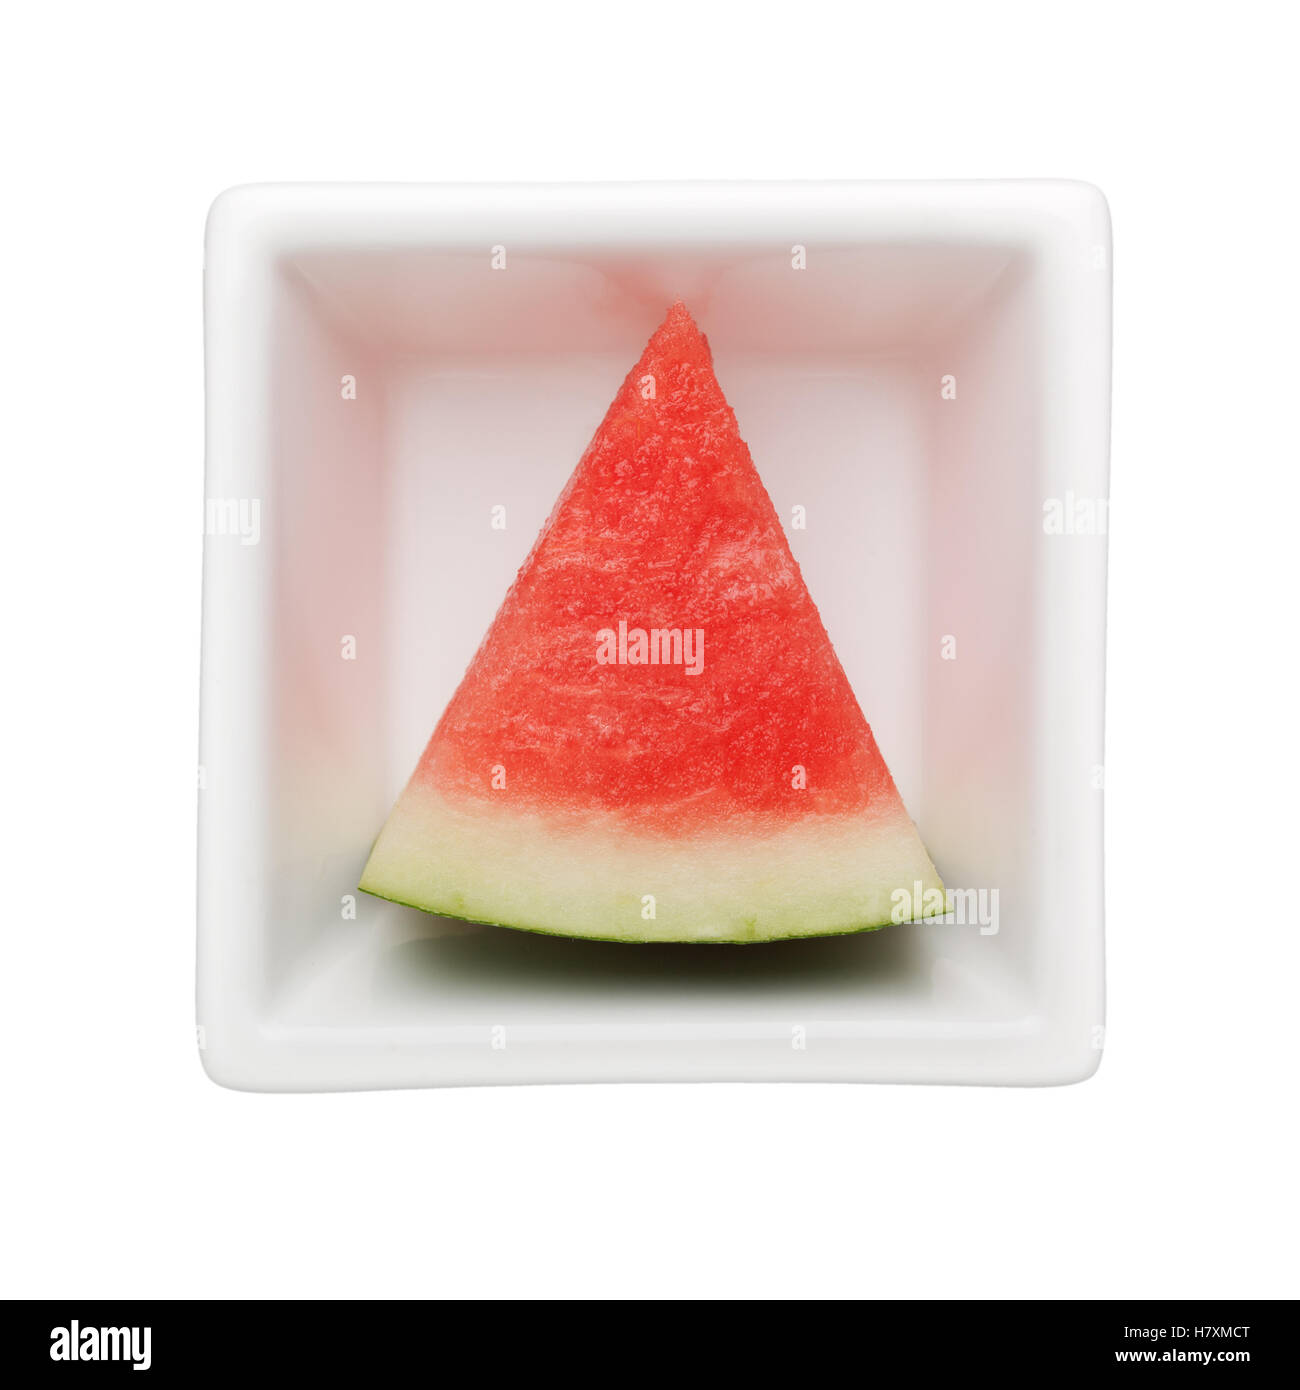 Scheibe Wassermelone in eine quadratische Schale isoliert auf weißem Hintergrund Stockfoto